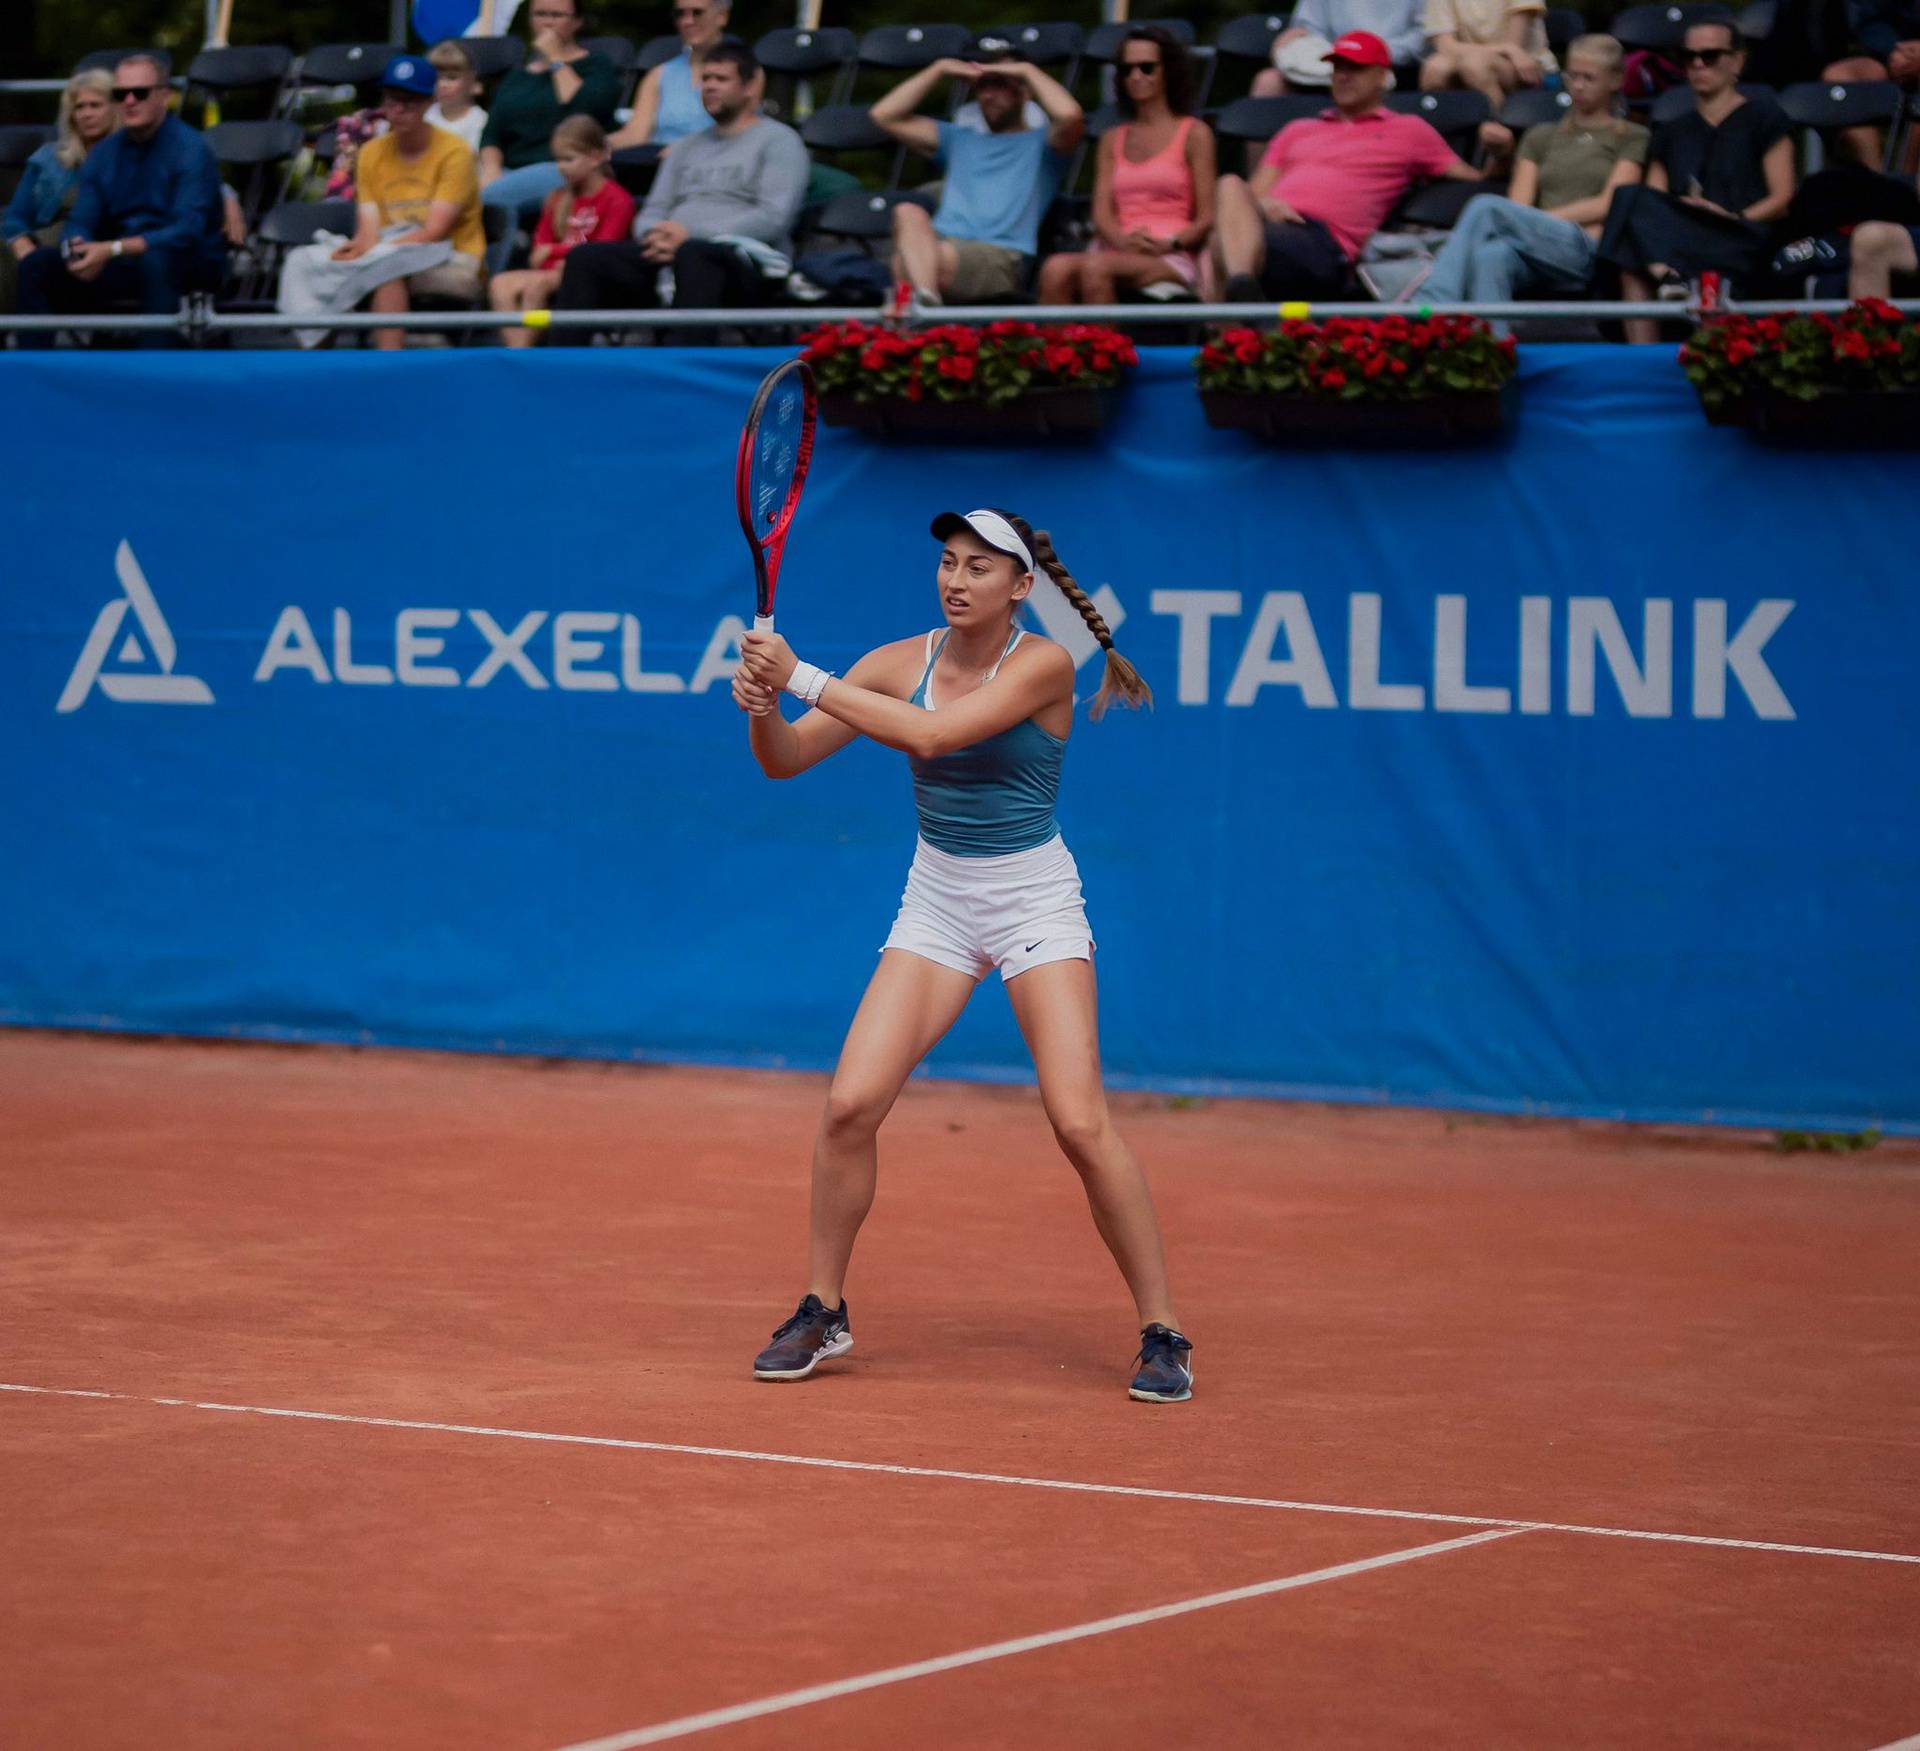 Mlada hrvatska tenisačica melje sve pred sobom! Lucija Ćirić Bagarić uzela treću titulu u nizu